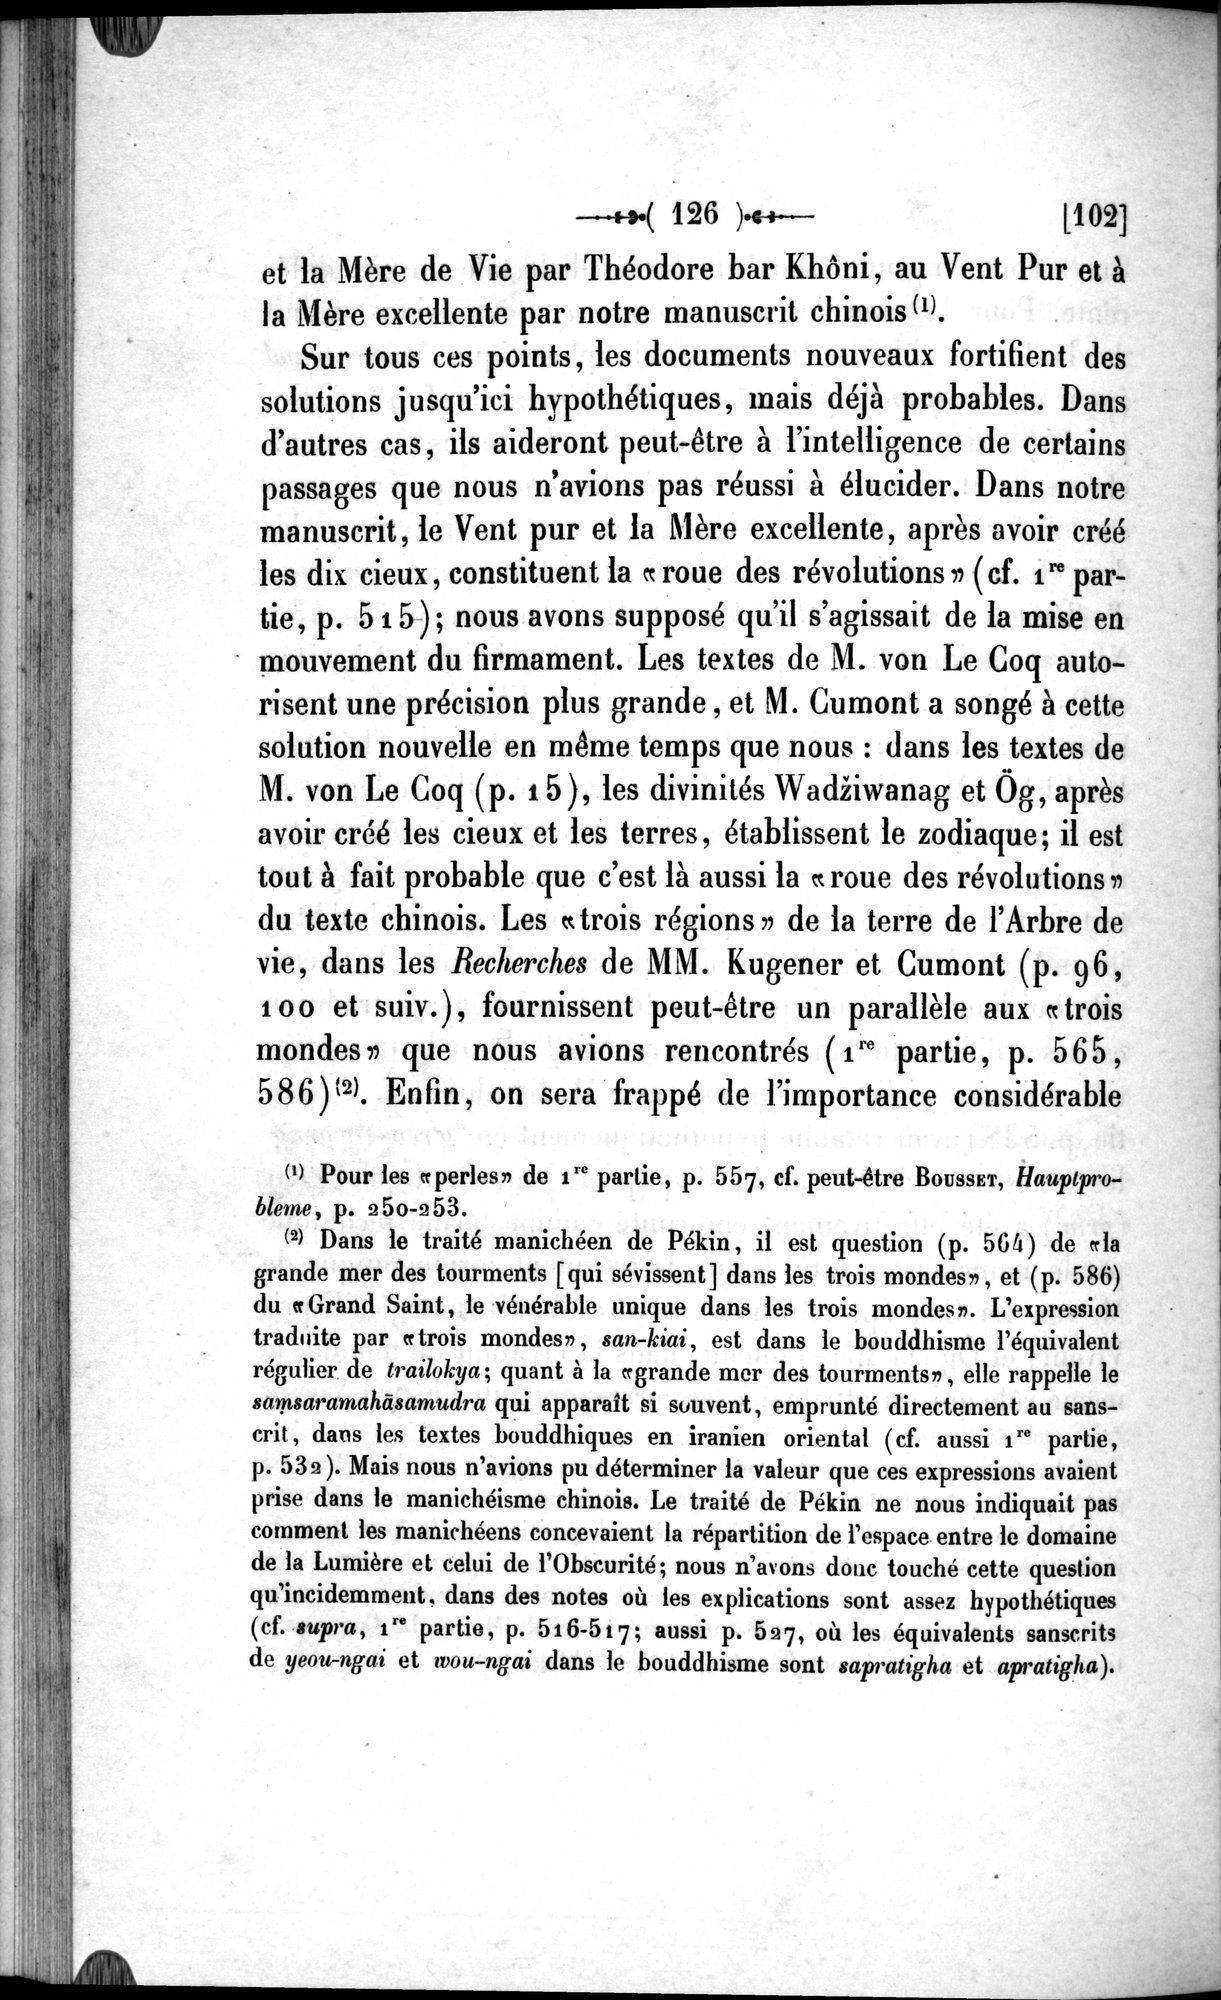 Un traité manichéen retrouvé en Chine : vol.1 / Page 136 (Grayscale High Resolution Image)